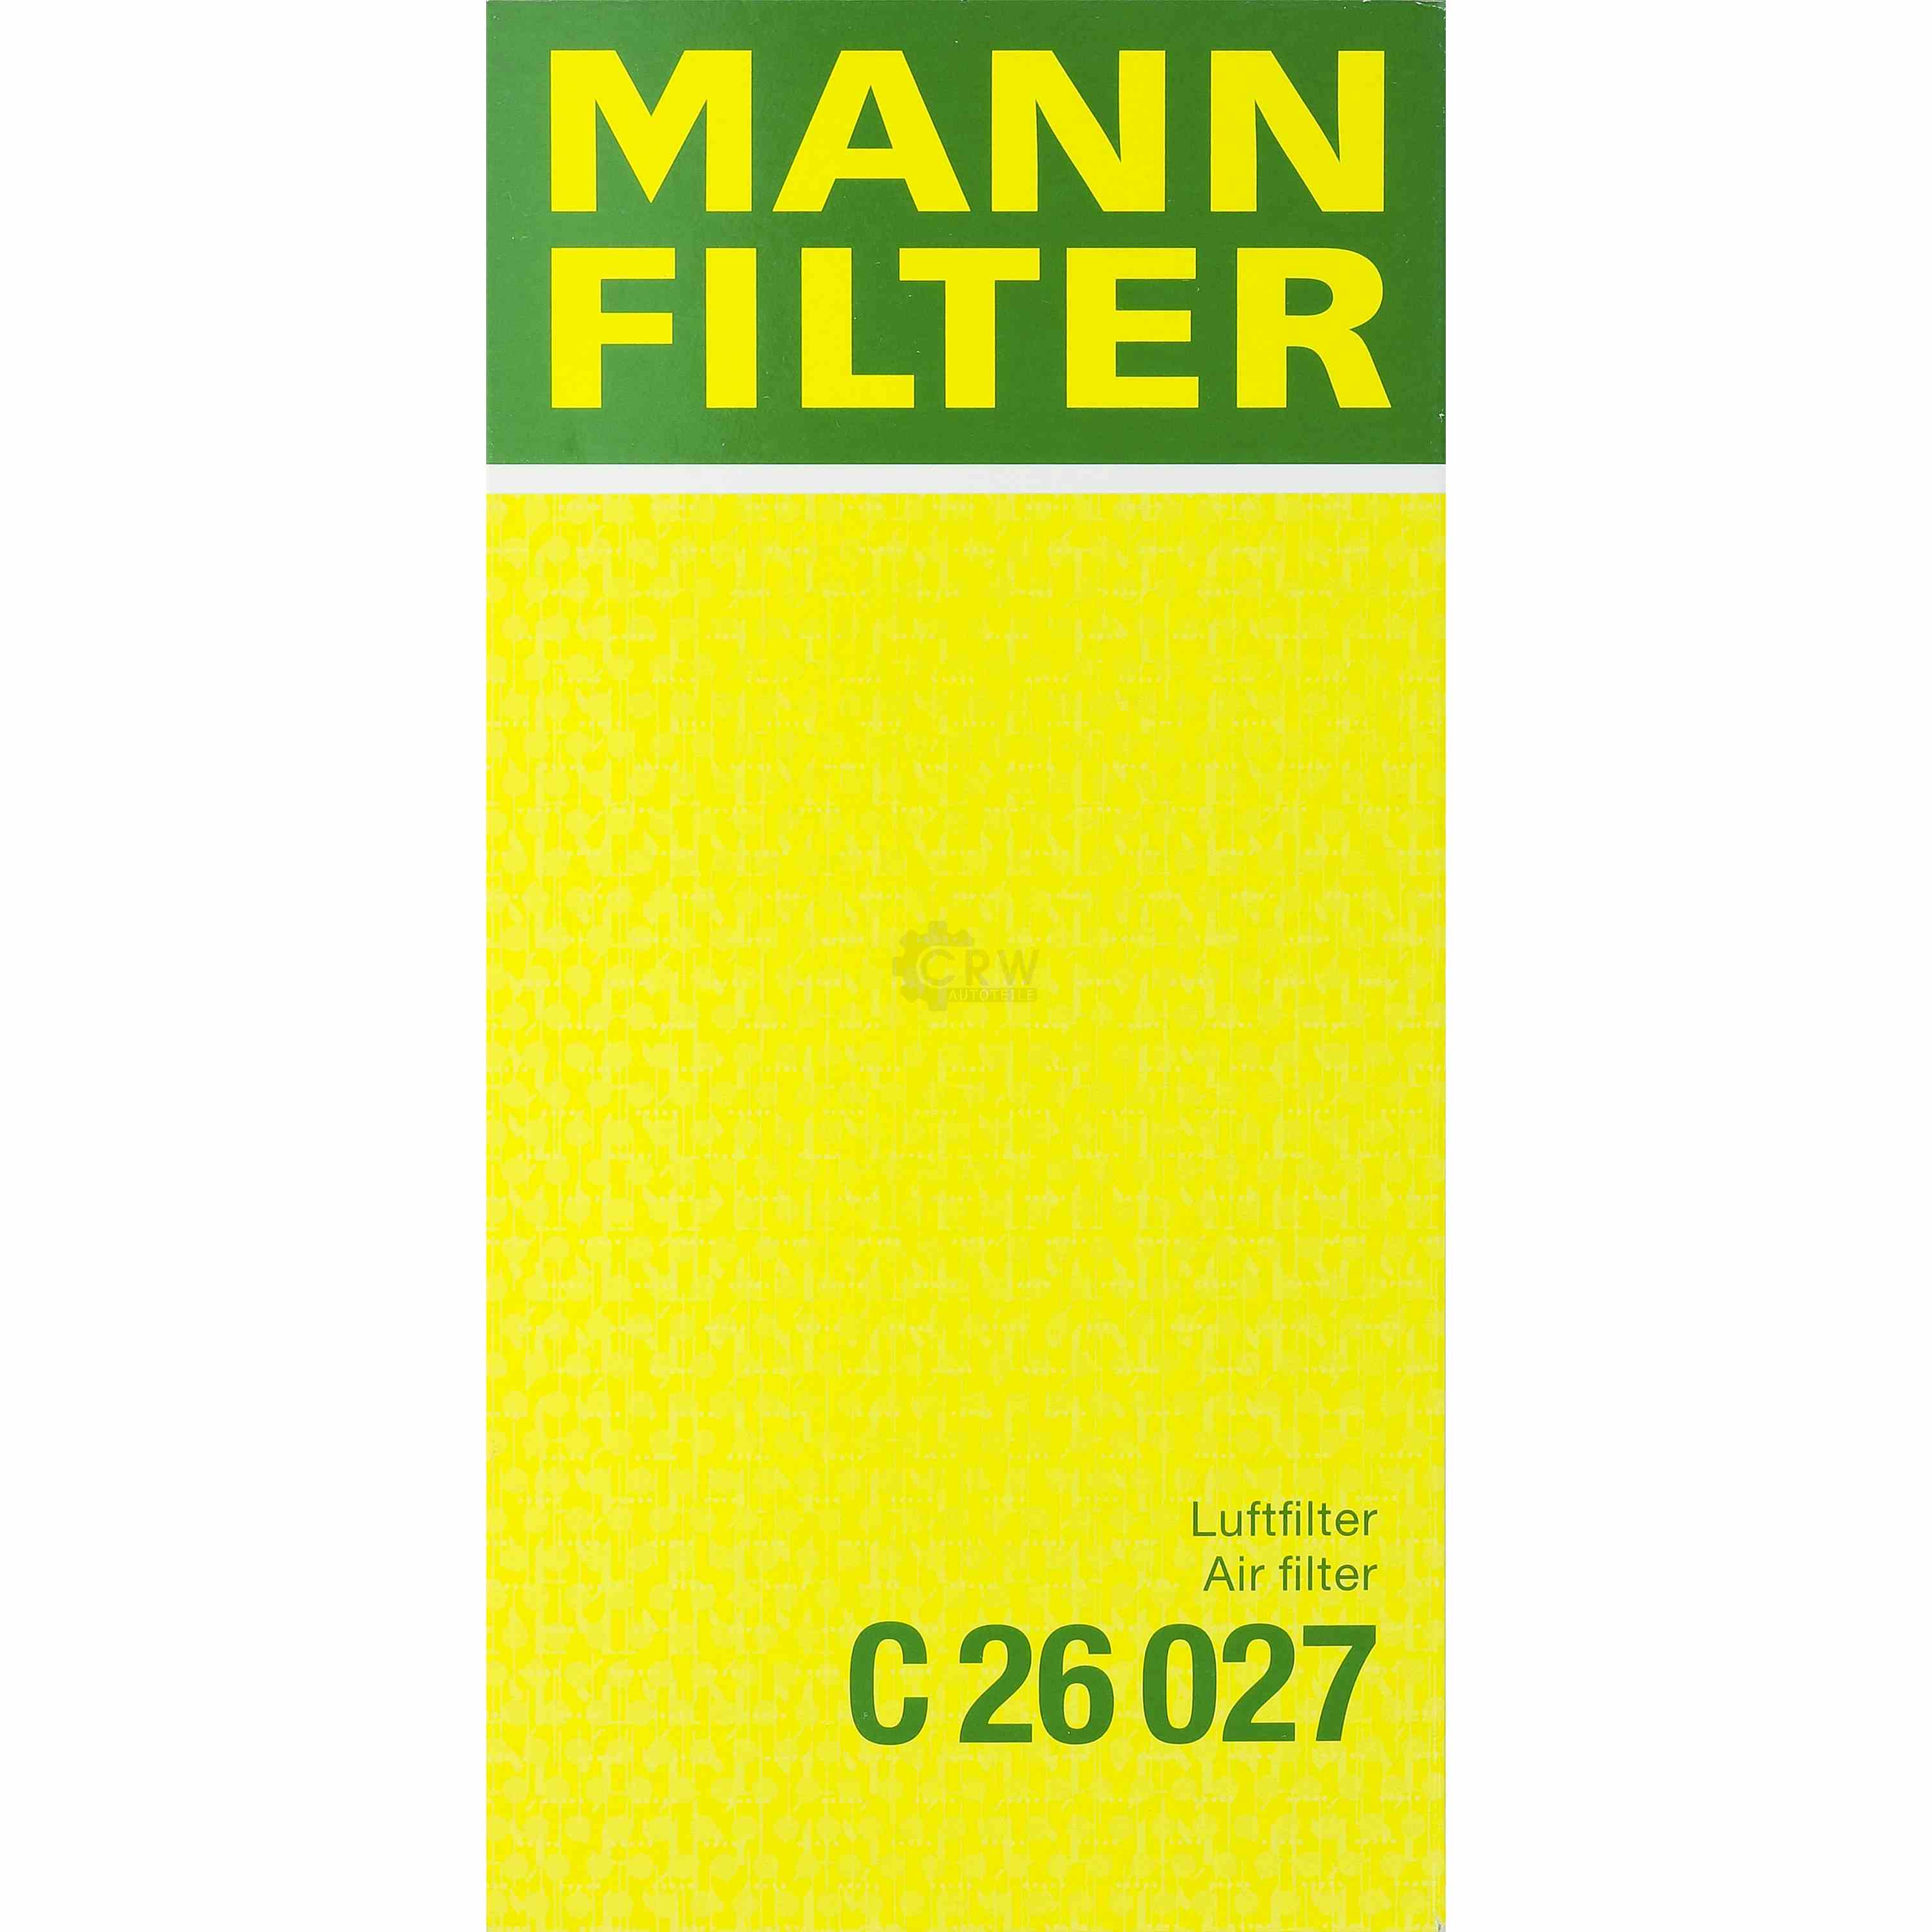 MANN-FILTER Luftfilter für Mitsubishi Mirage/Space Star Schrägheck A0_A 1.0 1.2